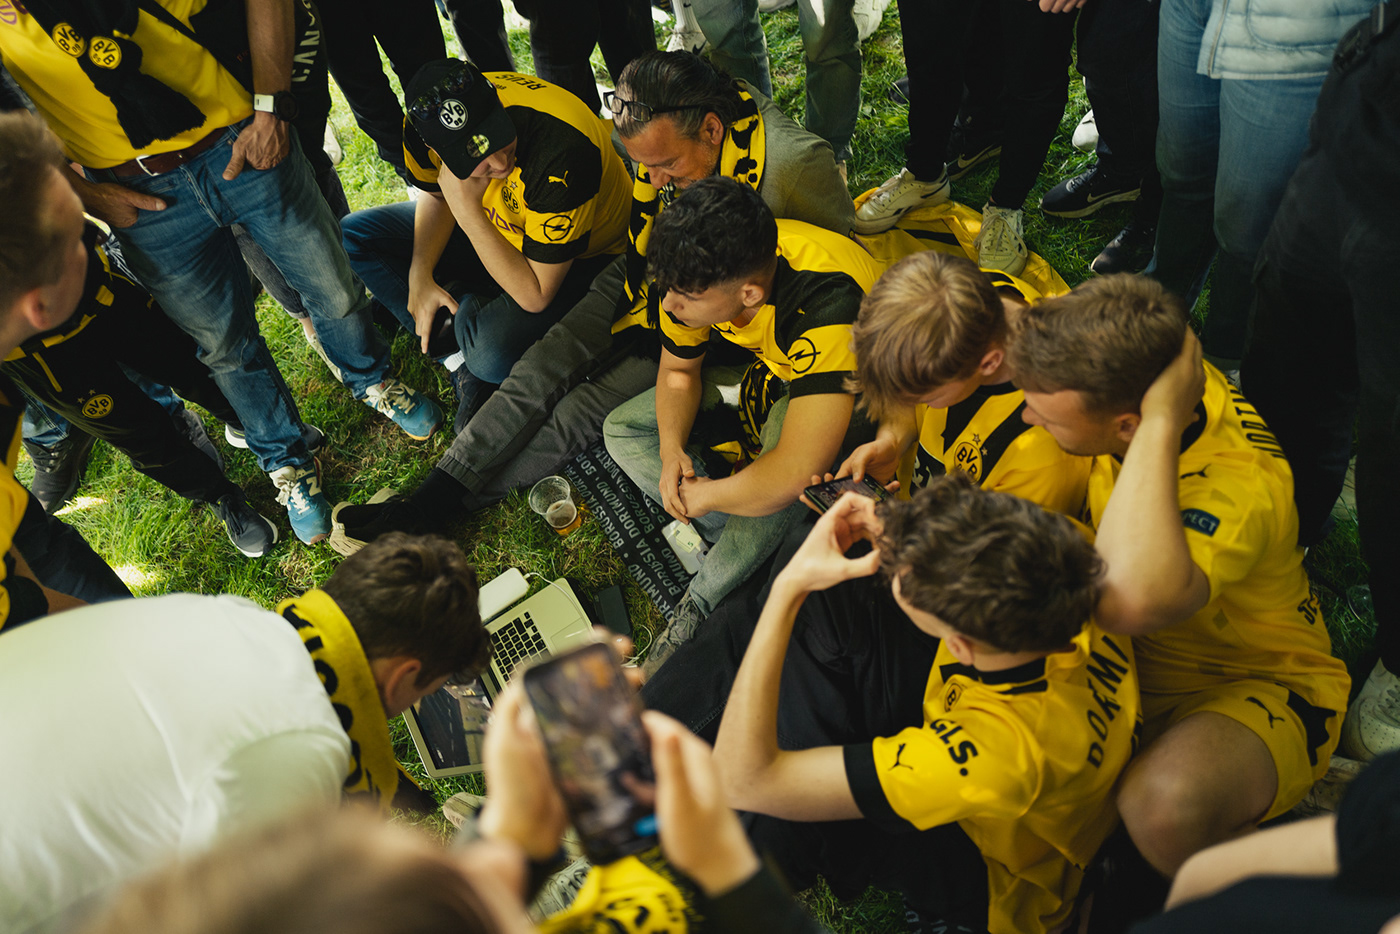 bvb Dortmund bundesliga meister Fussball football sports fans mainz05 Meisterschaft